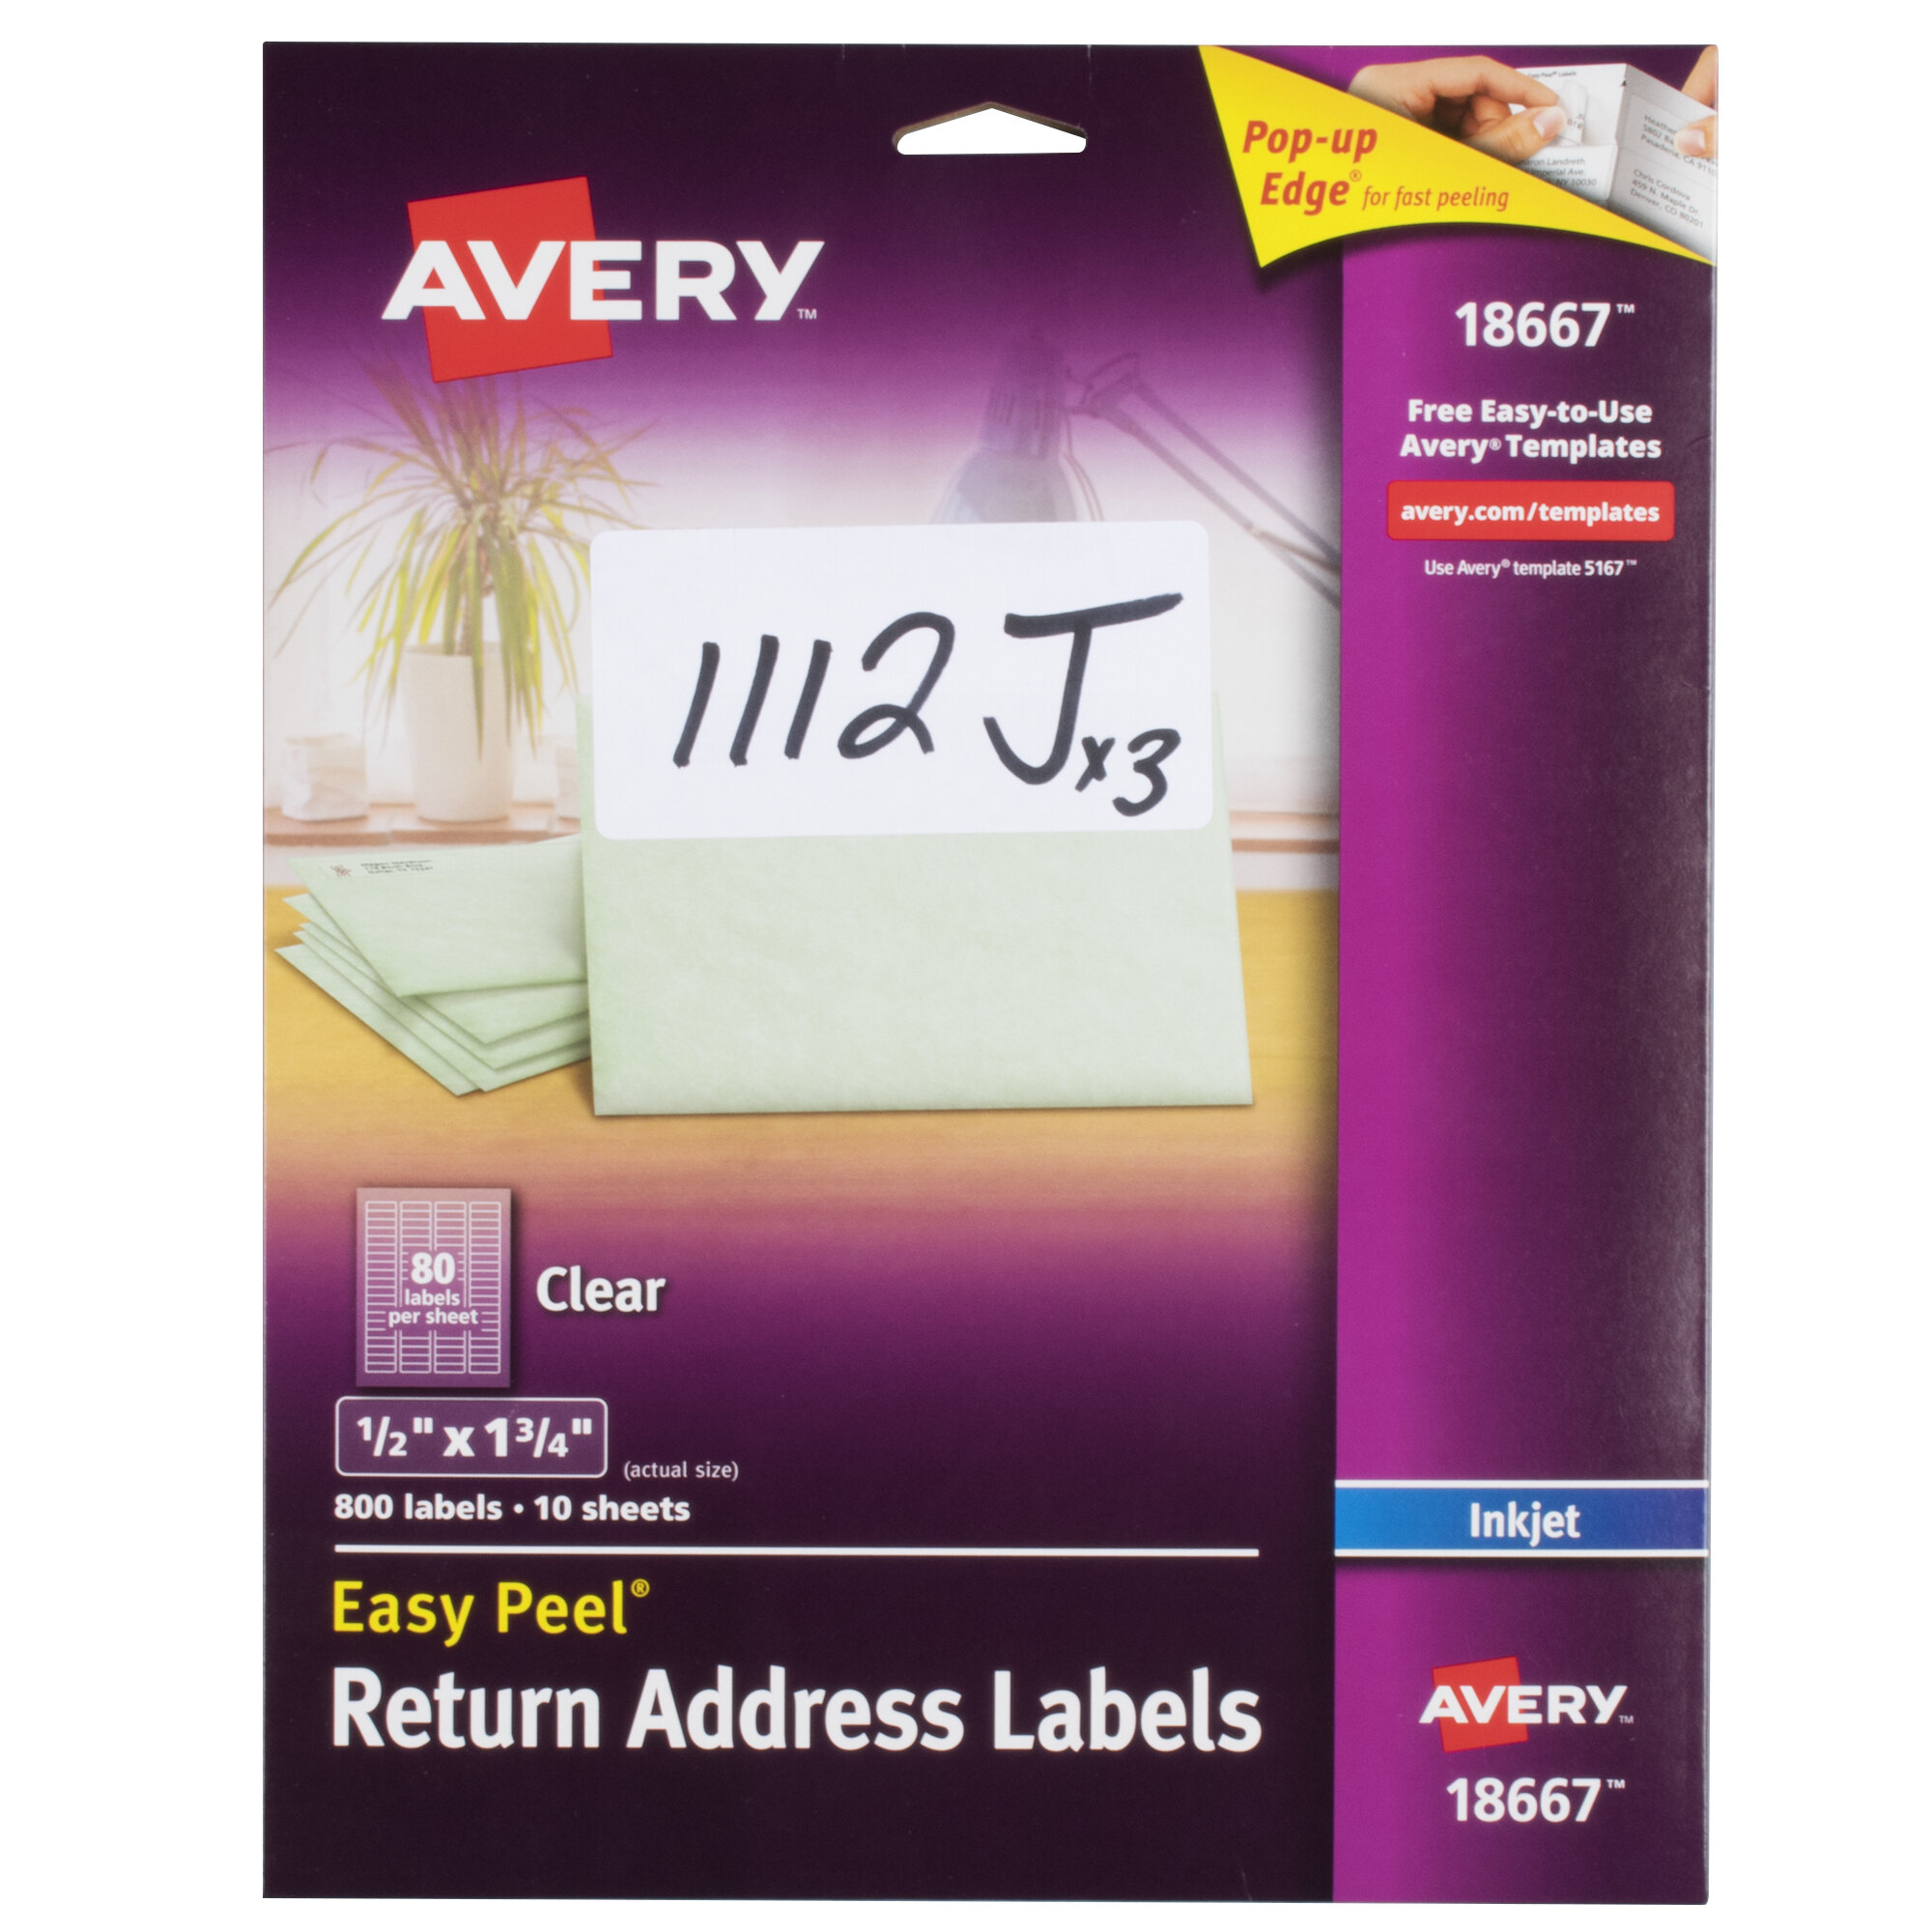 Avery 18667 Easy Peel 1/2" x 1 3/4" Clear Inkjet Printer Return Address